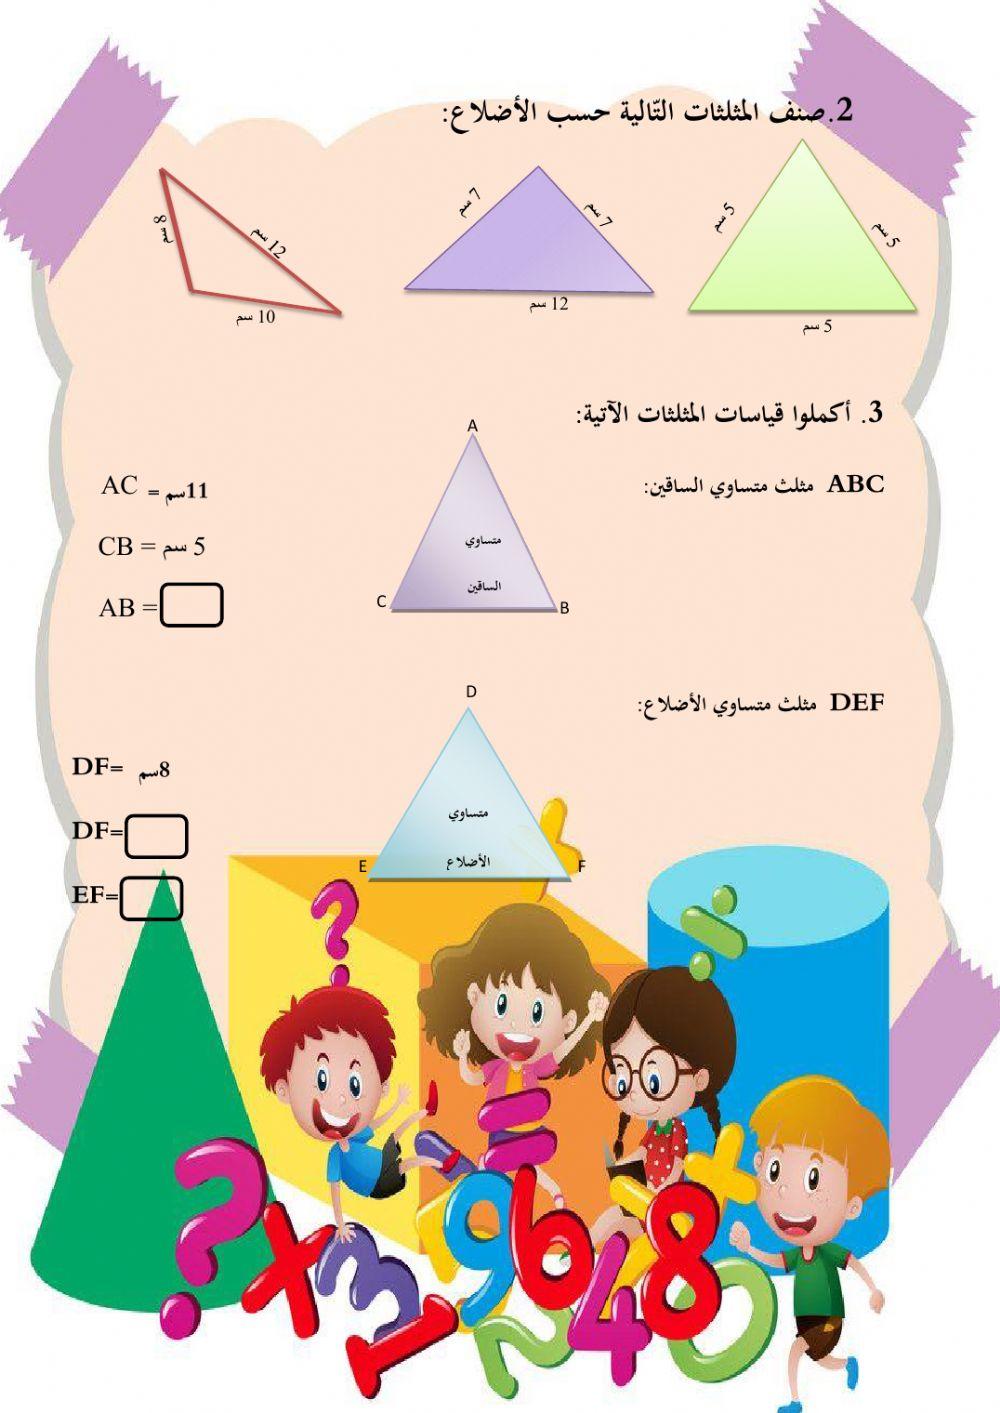 تصنيف المثلثات